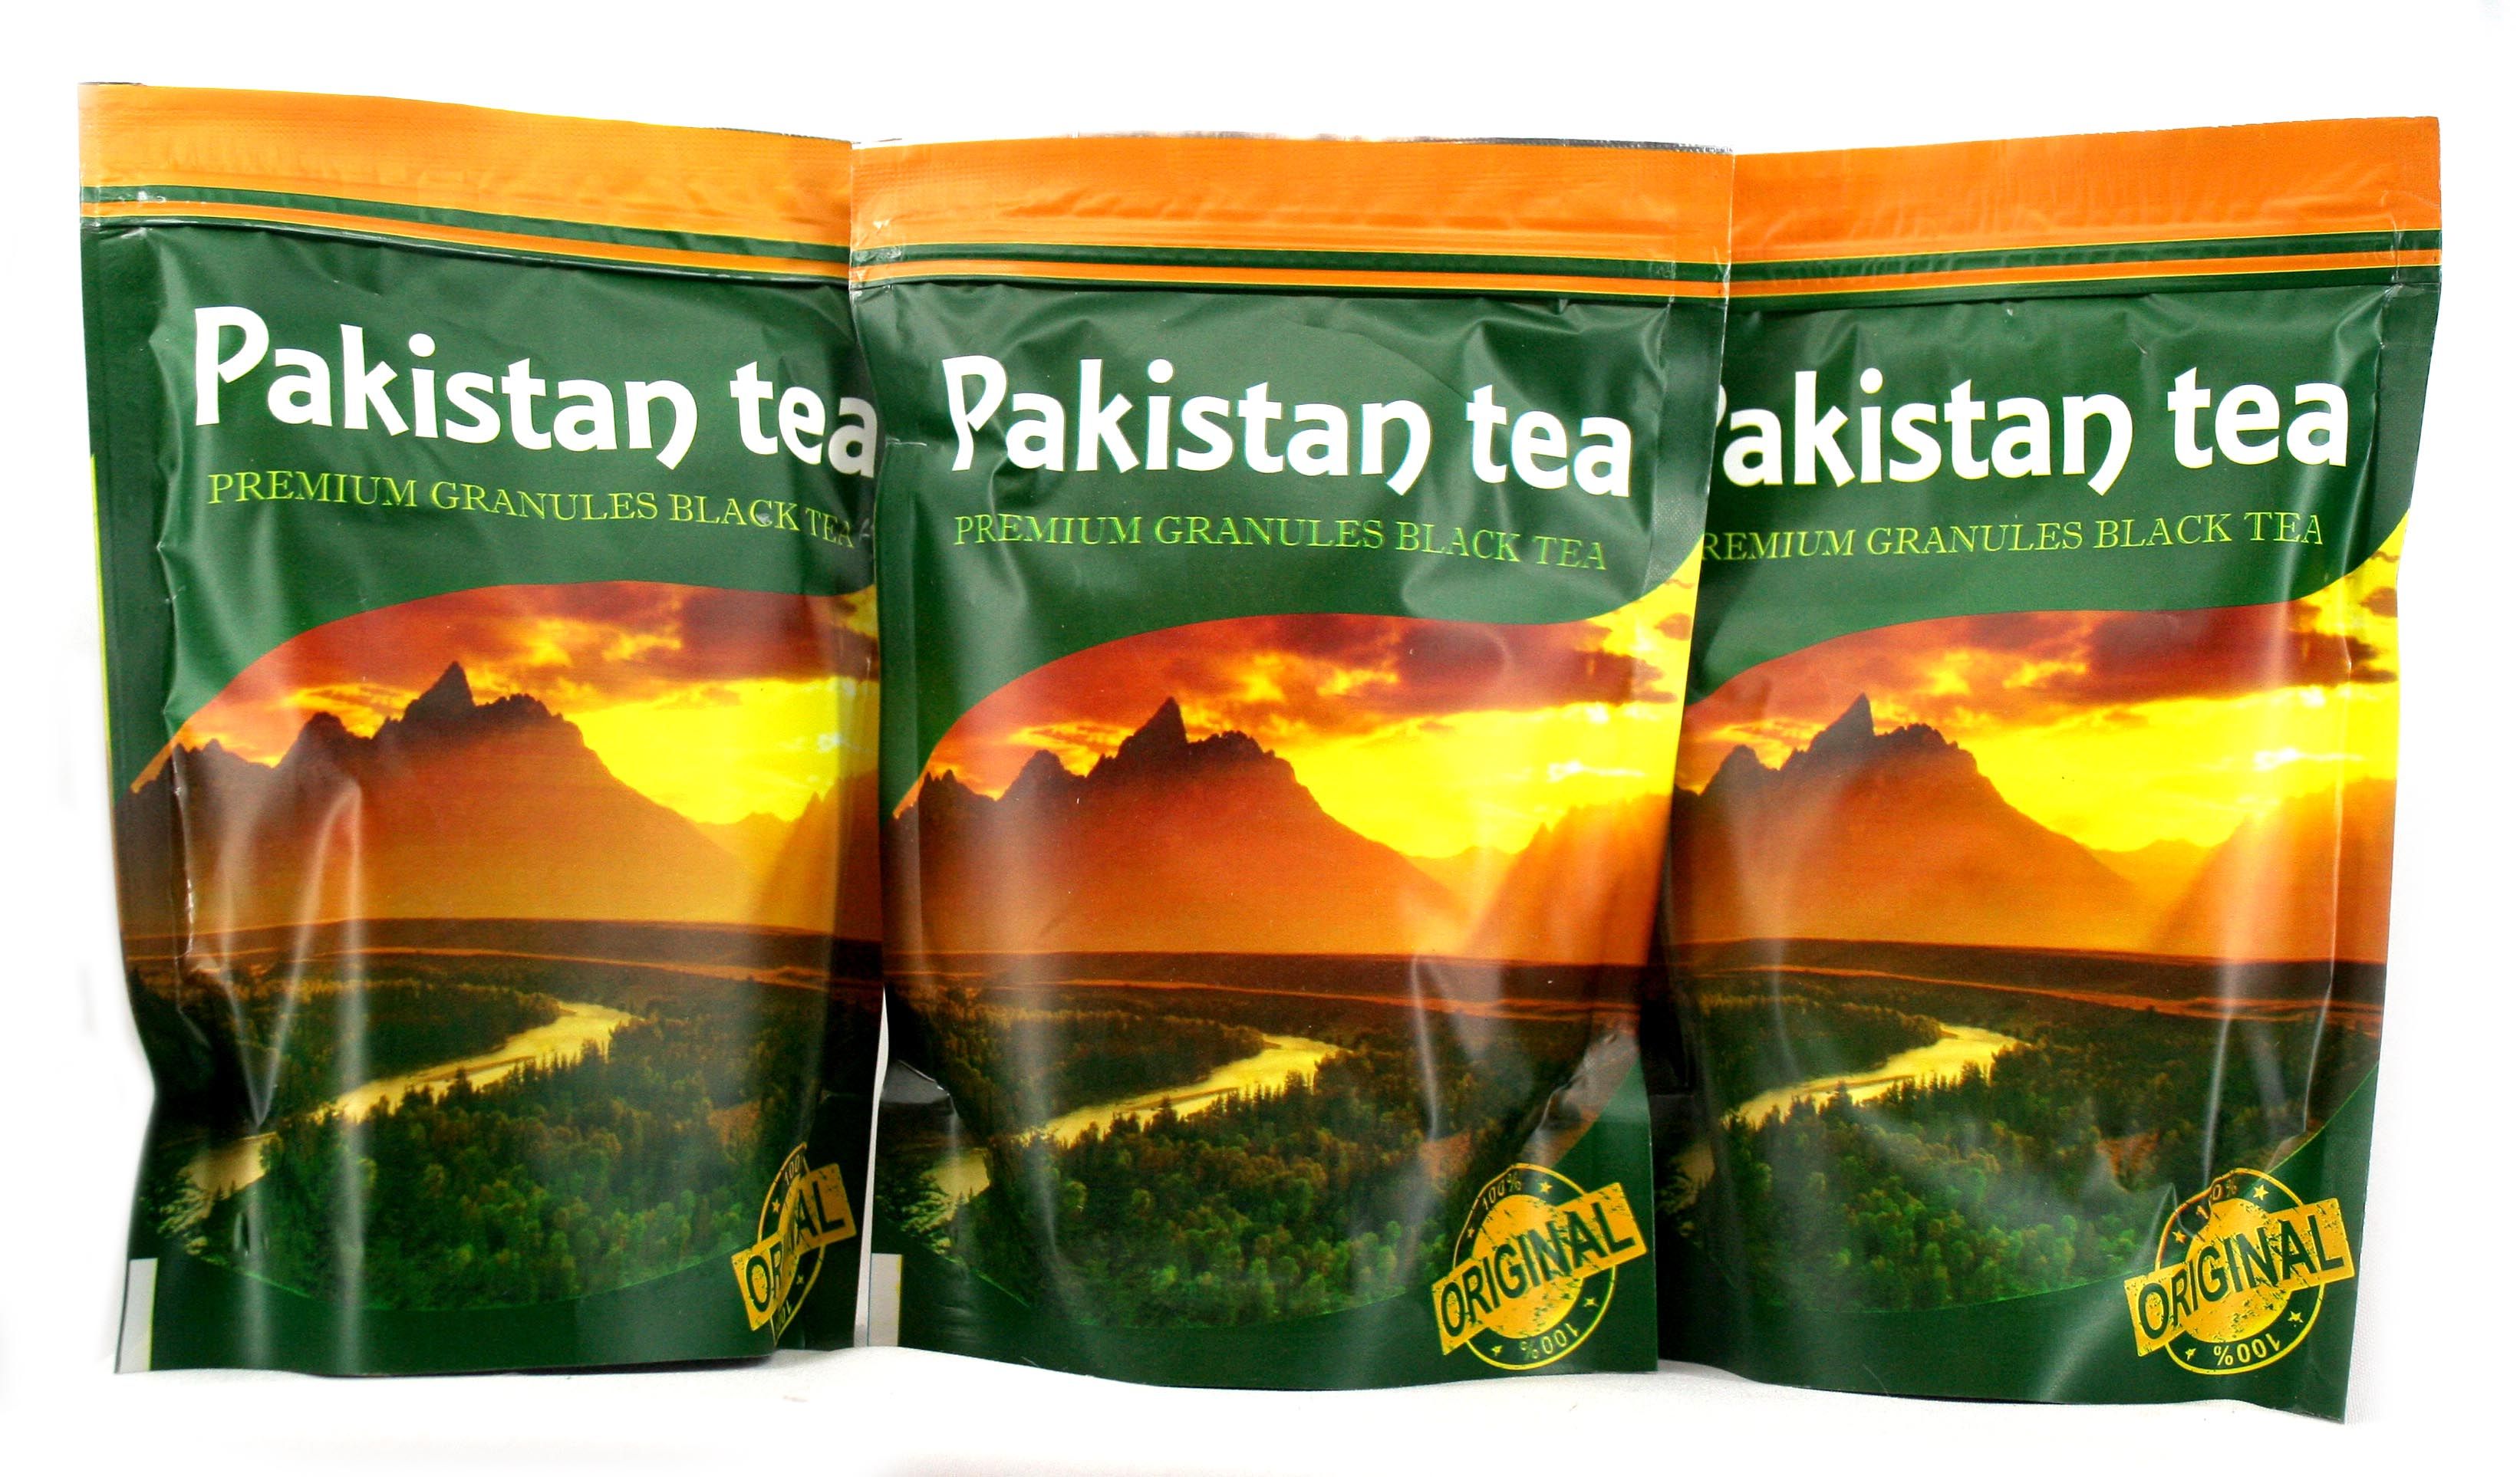 Чай пакистанский гранулированный. Pakistan Tea 200гр. Пакистанский чай премиум гранулированный. Пакистанский черный чай. Пакистанский чай листовой.